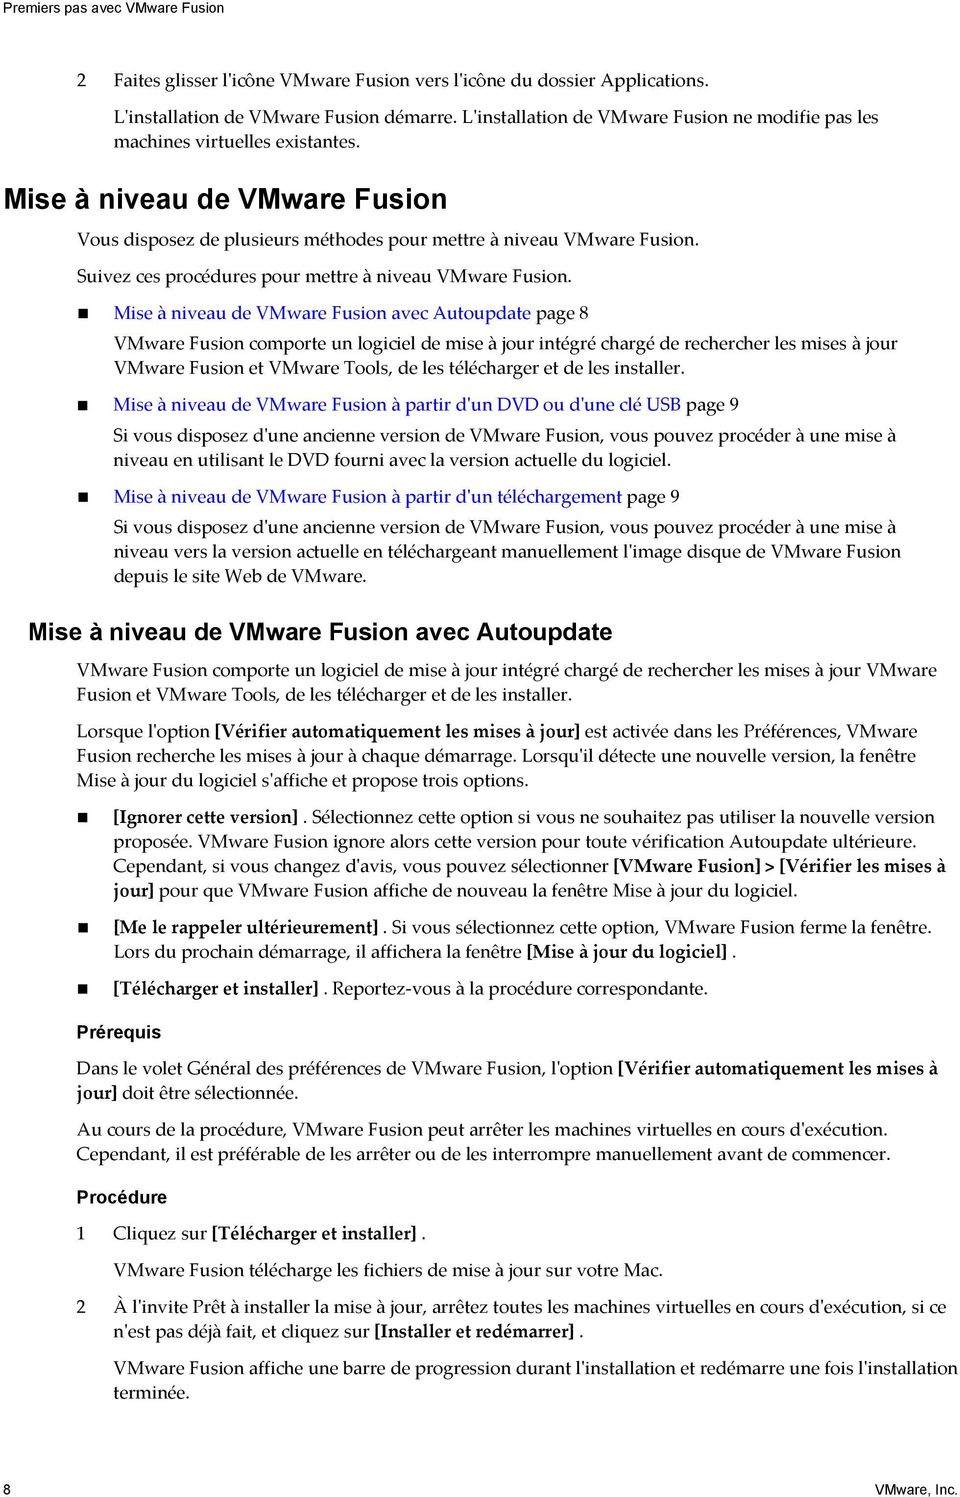 Mise à niveau de VMware Fusion avec Autoupdate page 8 VMware Fusion comporte un logiciel de mise à jour intégré chargé de rechercher les mises à jour VMware Fusion et VMware Tools, de les télécharger